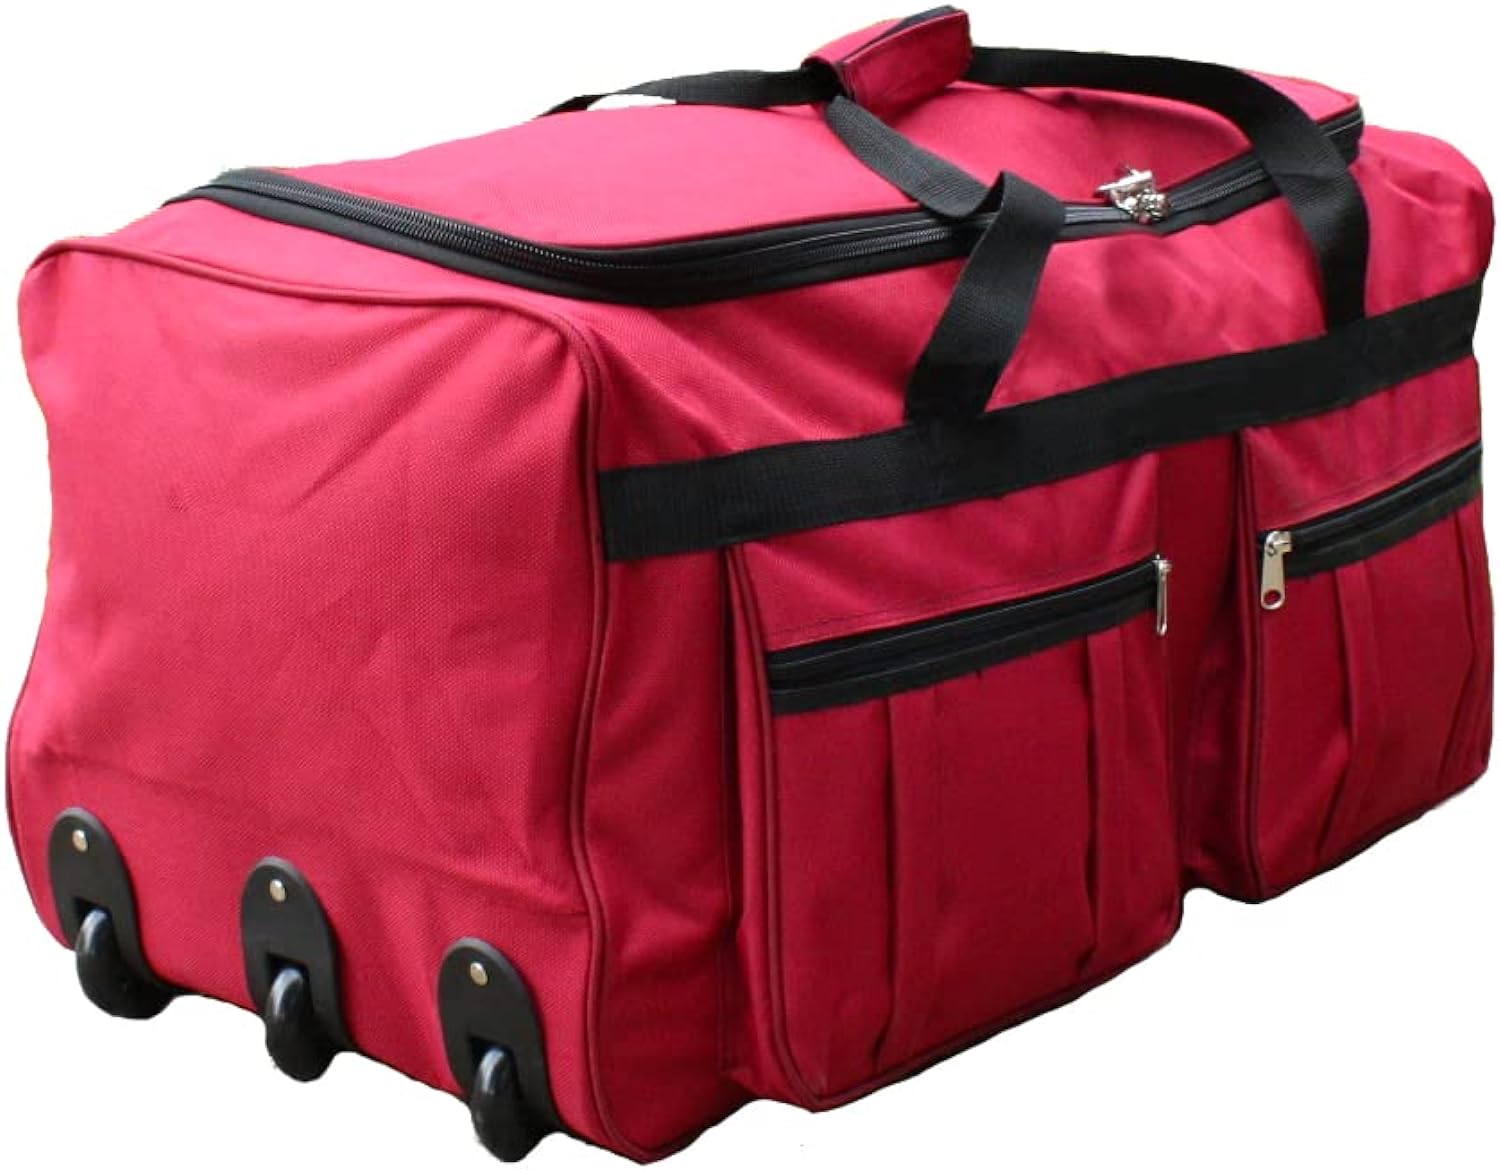 Gothamite 36-inch Rolling Duffle Bag with Wheels, Luggage Bag, Hockey Bag, XL Duffle Bag With Rollers, Heavy Duty (Fuchsia)